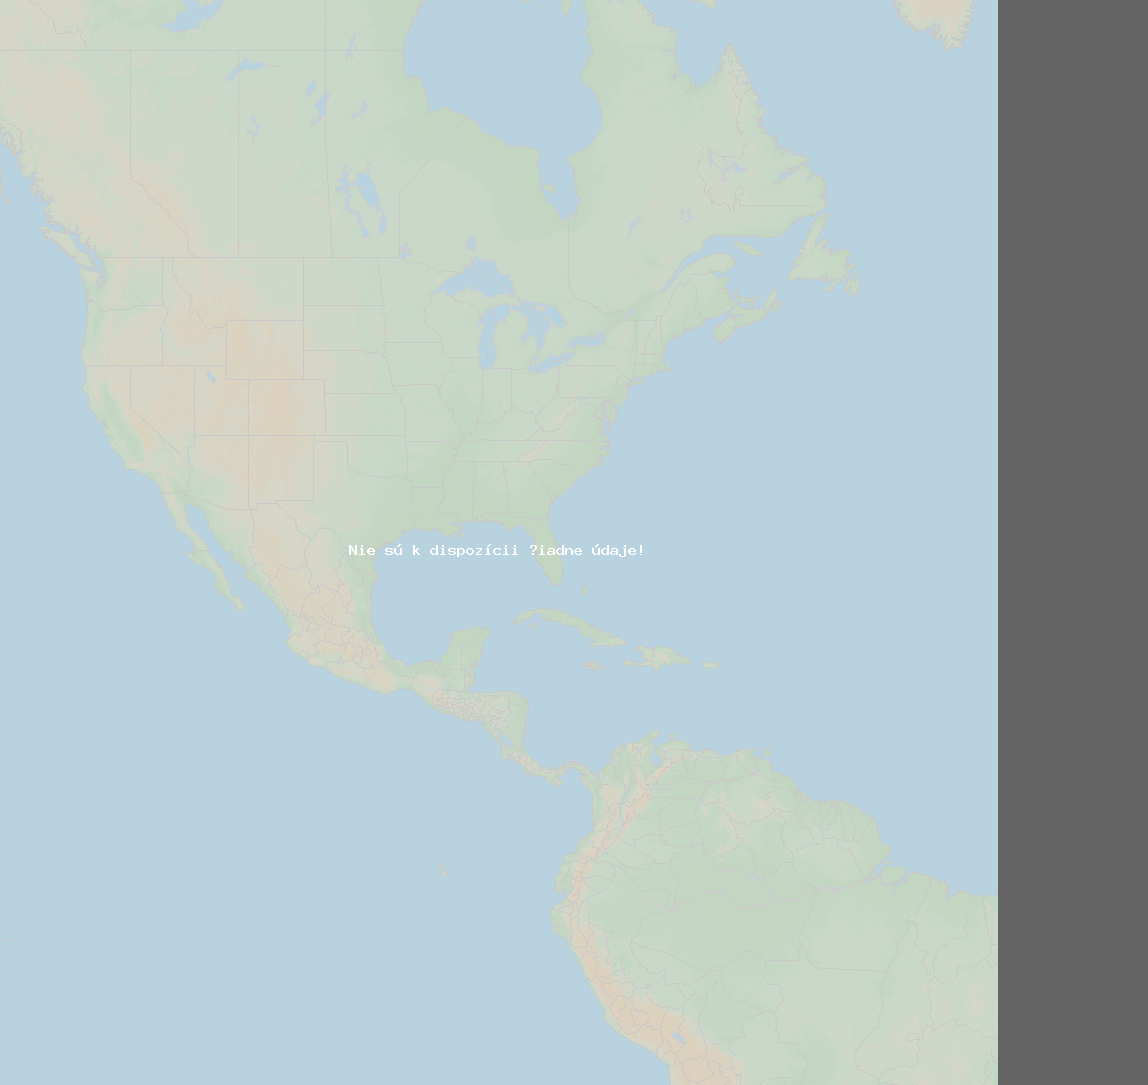 Pomer bleskov (Stanica Sept-Iles QC) North America 2020 Január